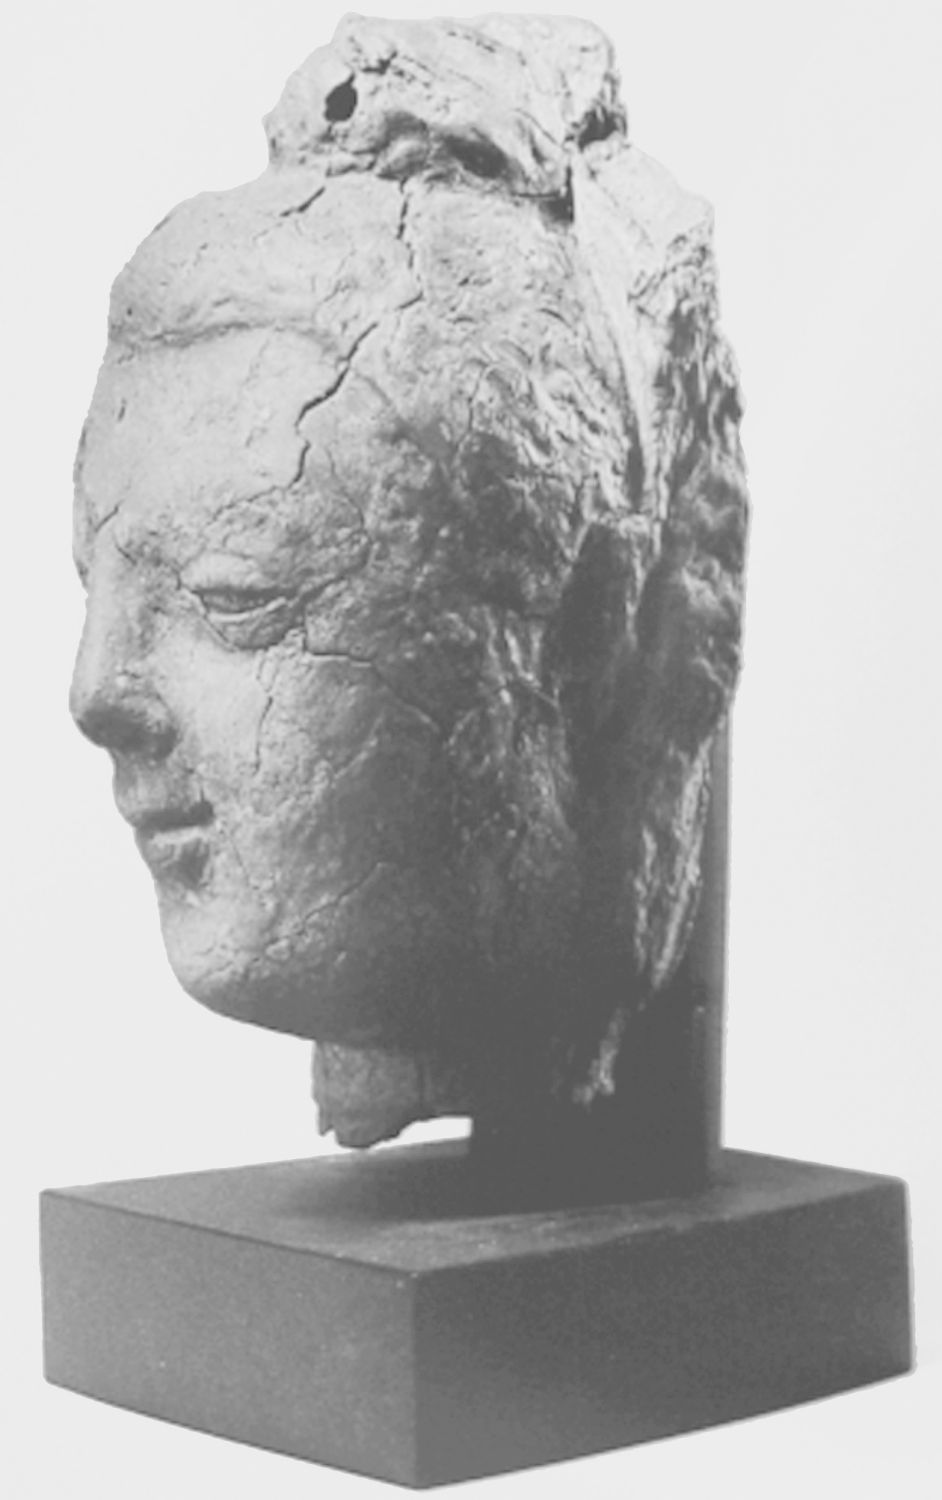 图1-57 释迦牟尼头部造像 于阗热瓦克佛寺遗址出土 大英博物馆藏